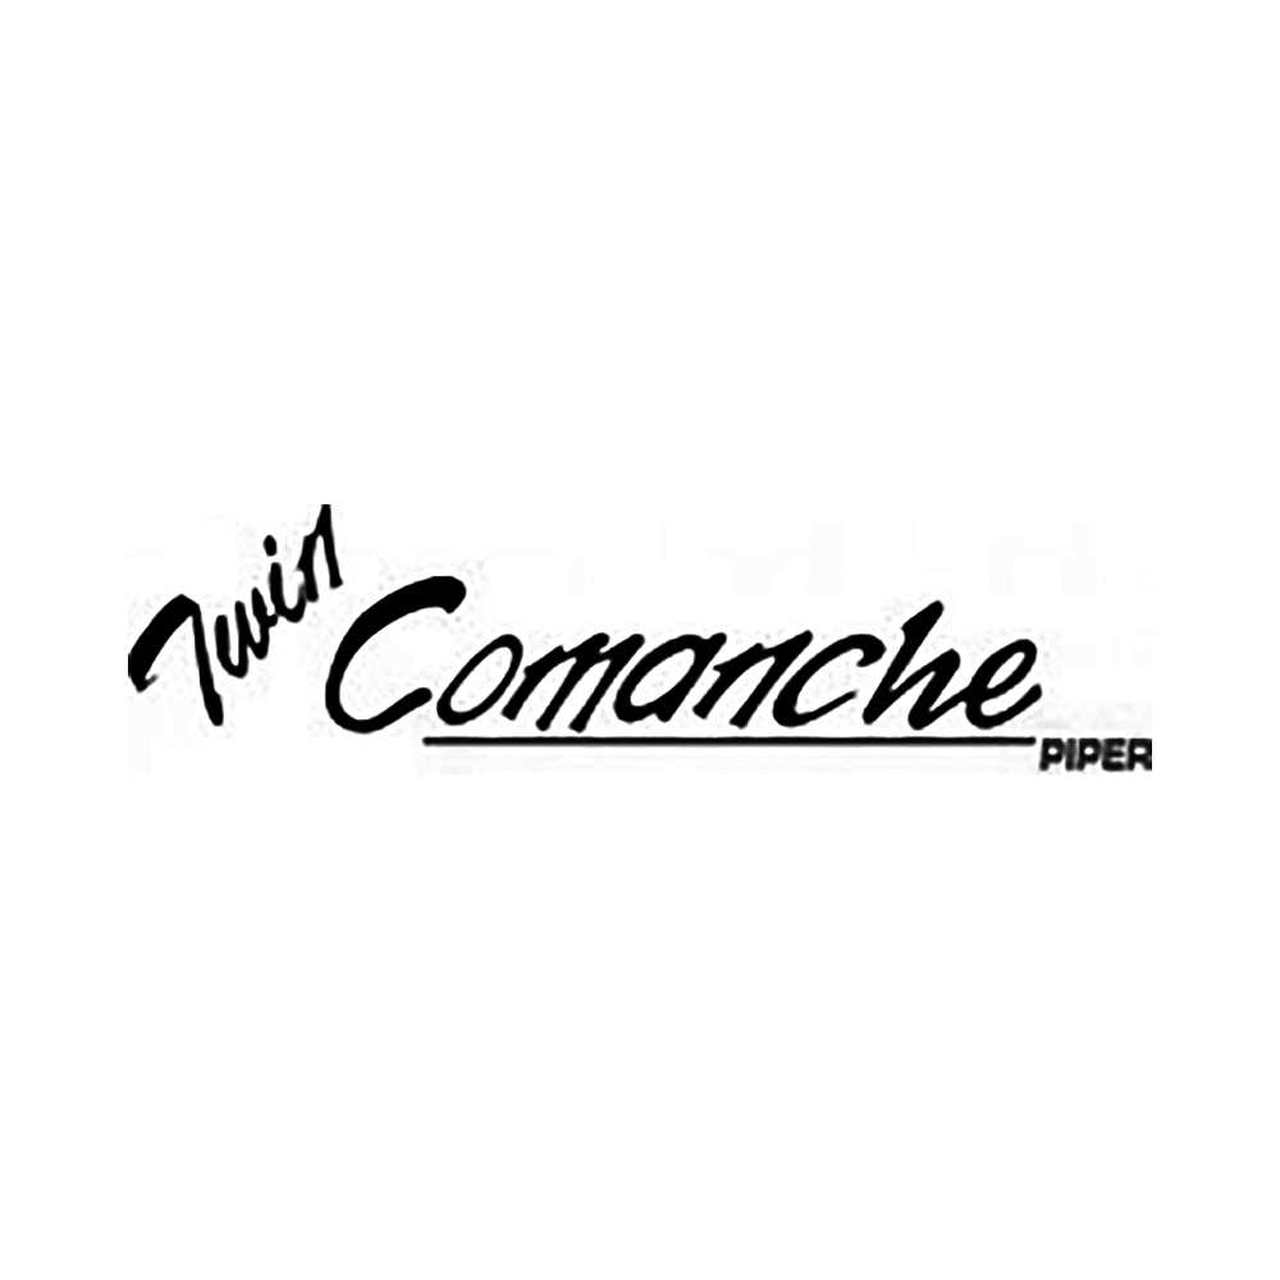 Comanche Logo - Piper Twin Comanche Logo Vinyl Decal Graphic